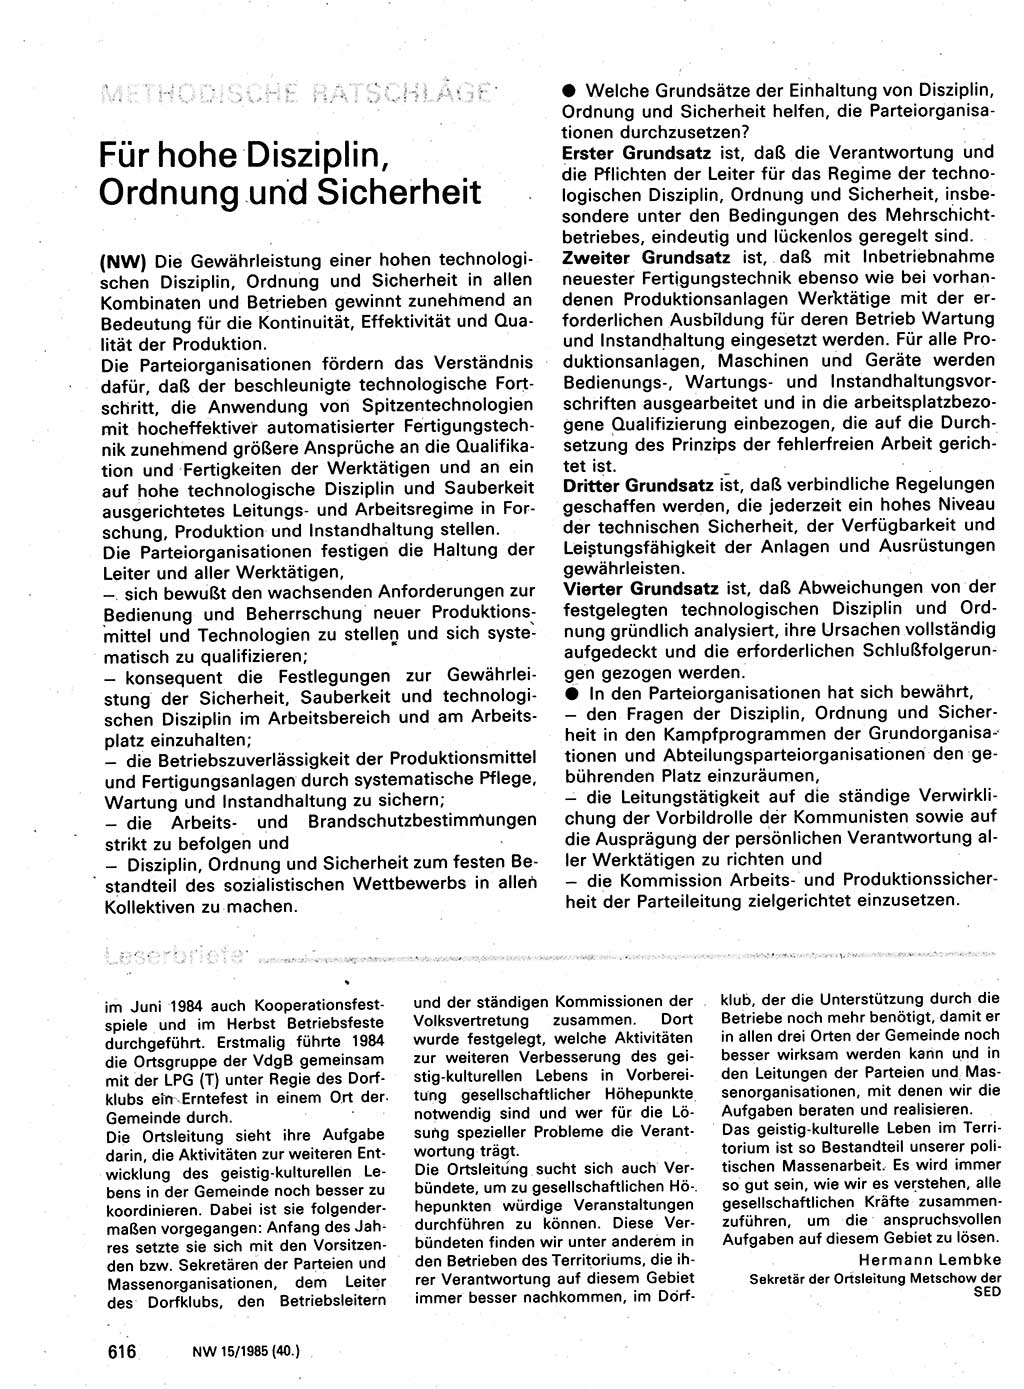 Neuer Weg (NW), Organ des Zentralkomitees (ZK) der SED (Sozialistische Einheitspartei Deutschlands) für Fragen des Parteilebens, 40. Jahrgang [Deutsche Demokratische Republik (DDR)] 1985, Seite 616 (NW ZK SED DDR 1985, S. 616)